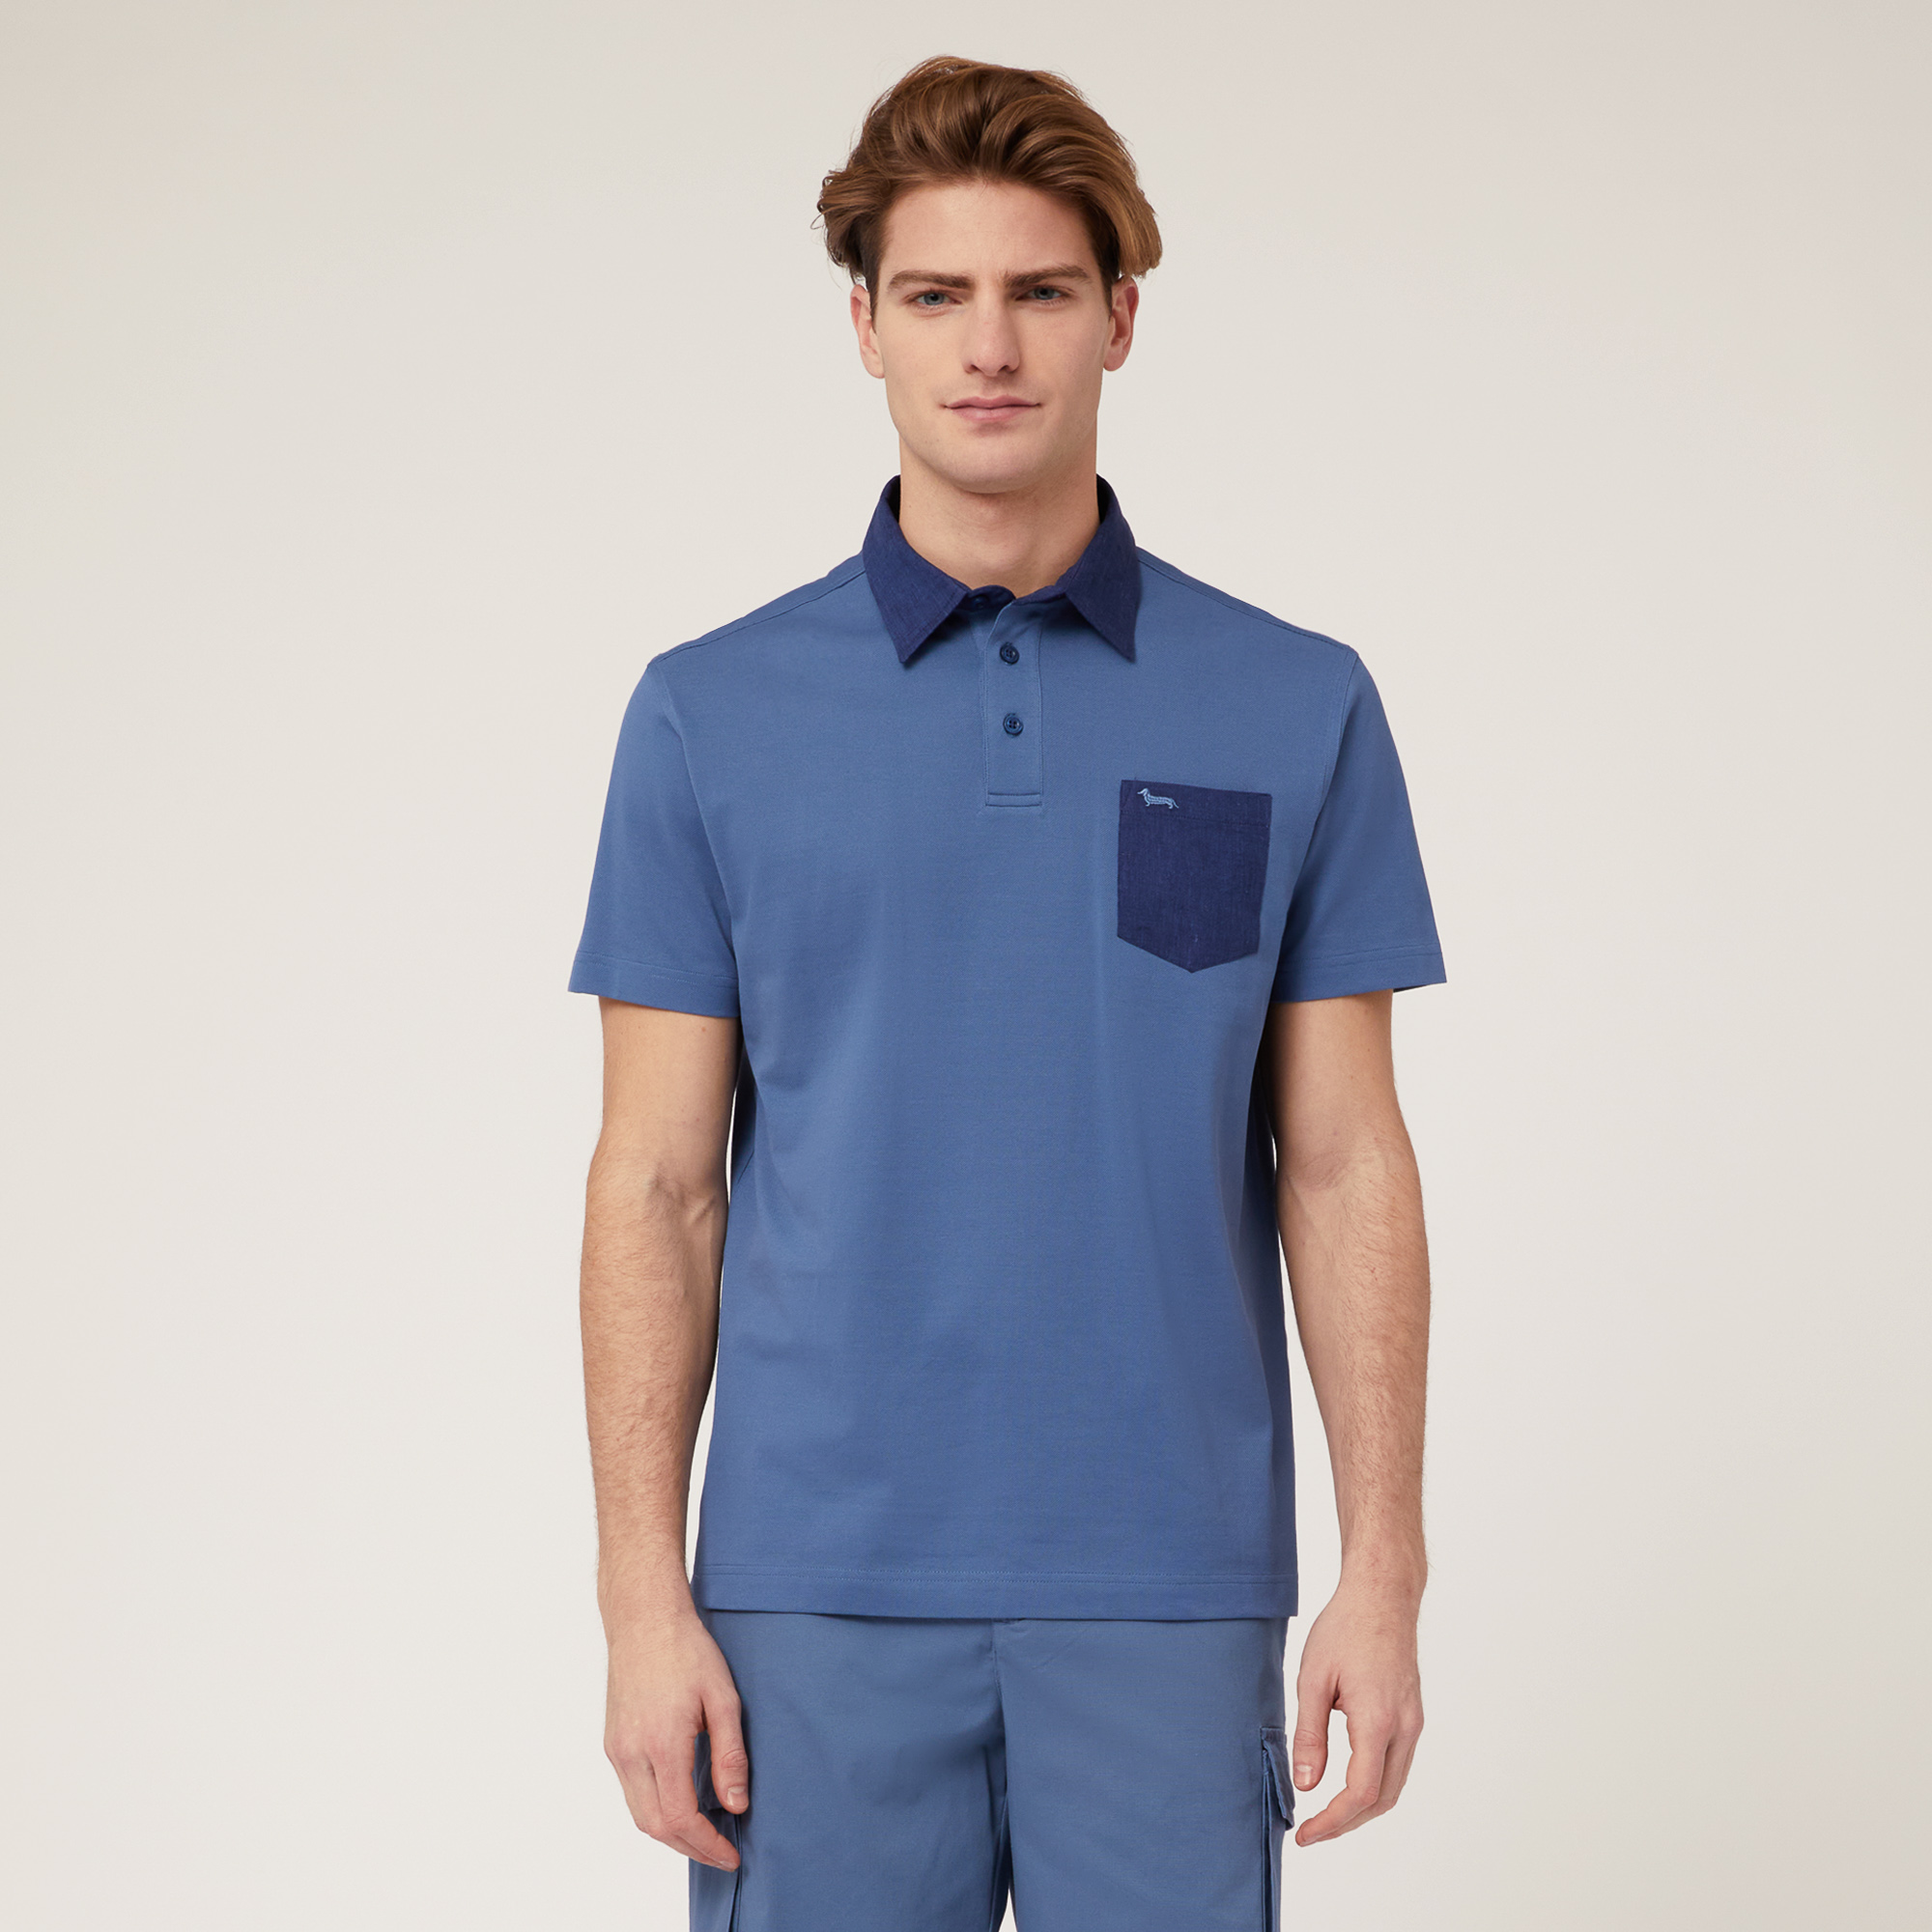 Poloshirt mit Brusttasche, Blau, large